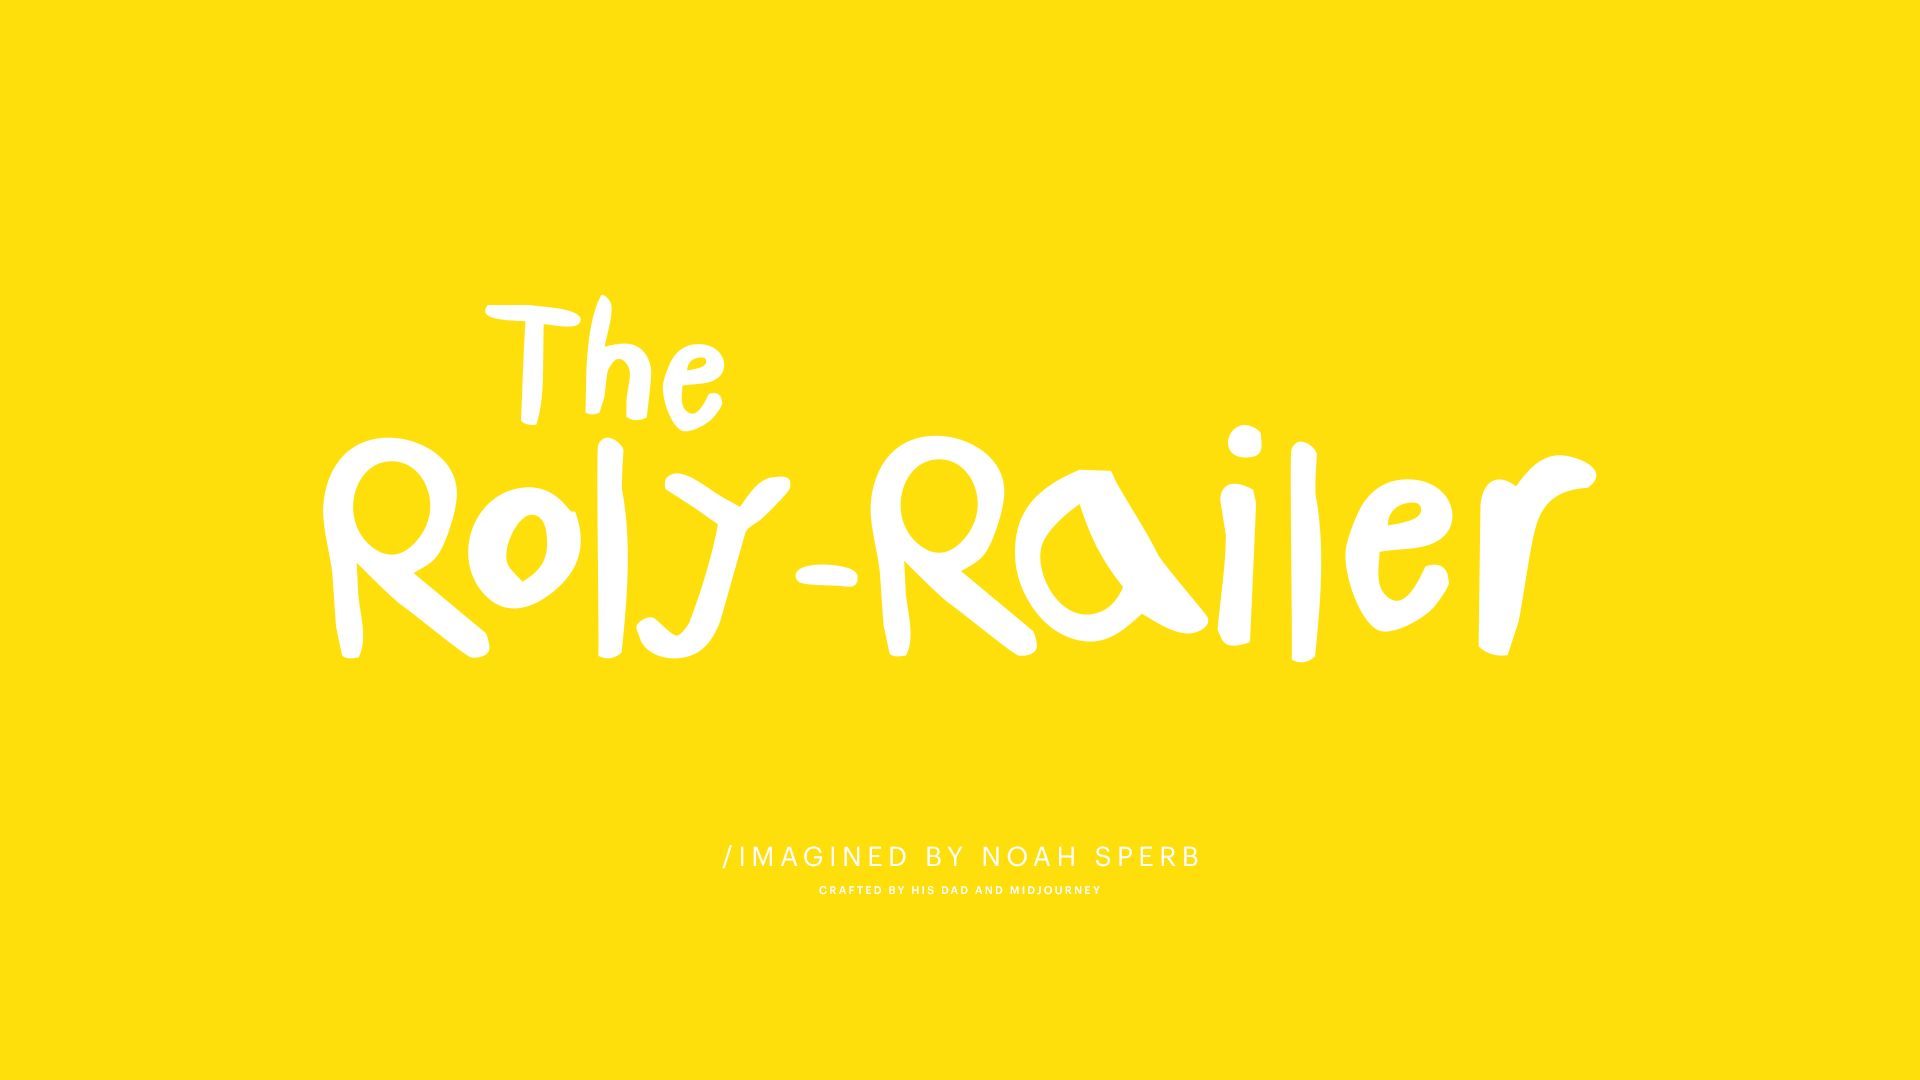 TYPESTHE-ROLY-RAILER